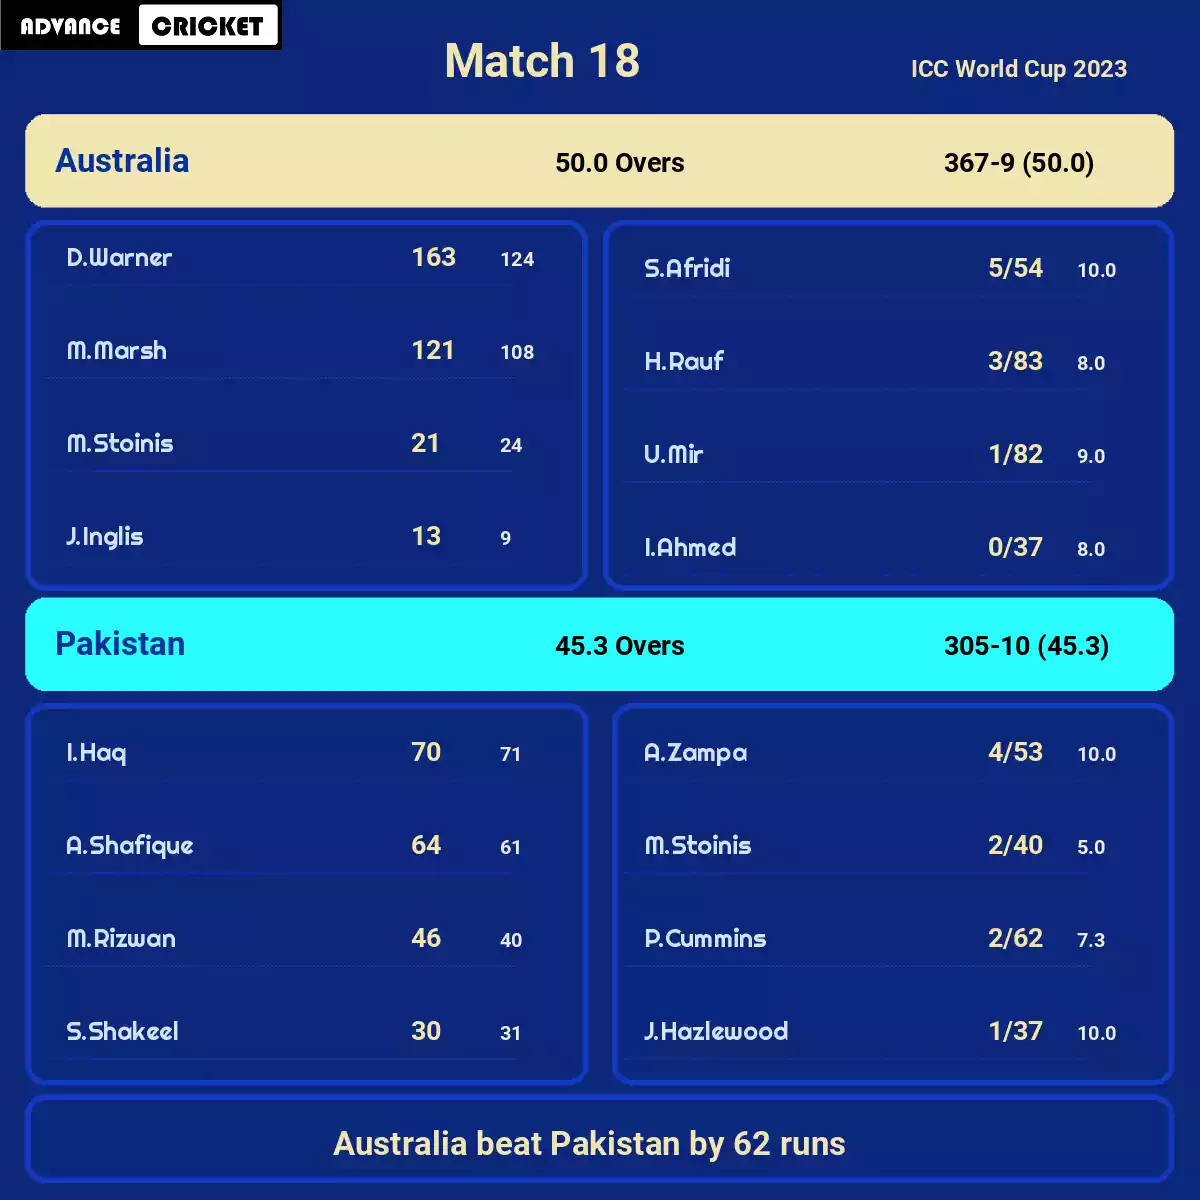 AUS vs PAK Match 18 ICC World Cup 2023